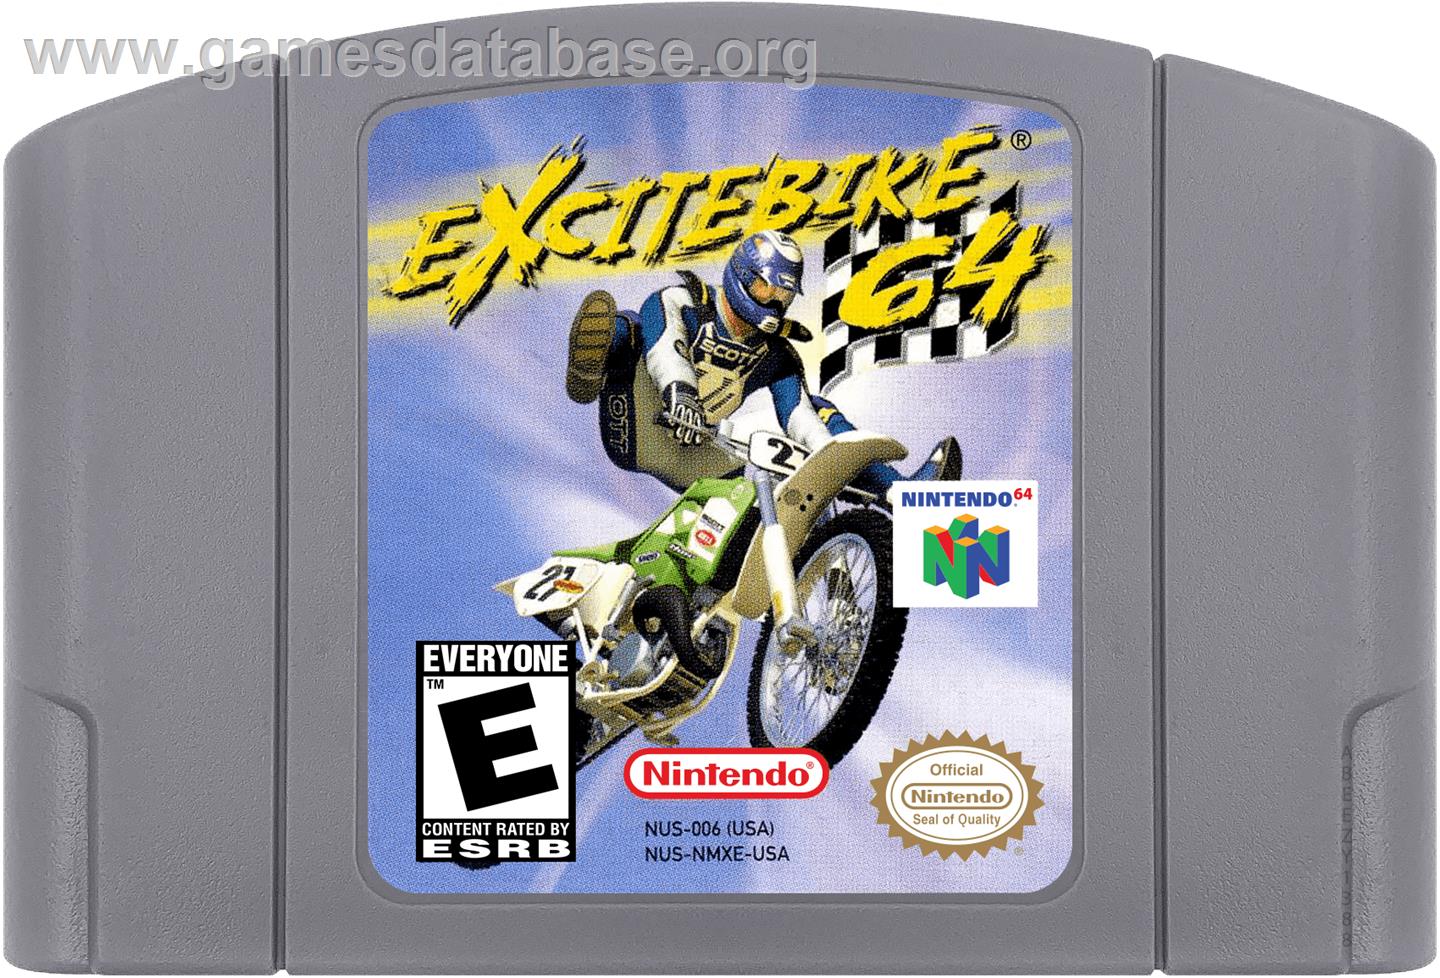 Excite Bike 64 - Nintendo N64 - Artwork - Cartridge